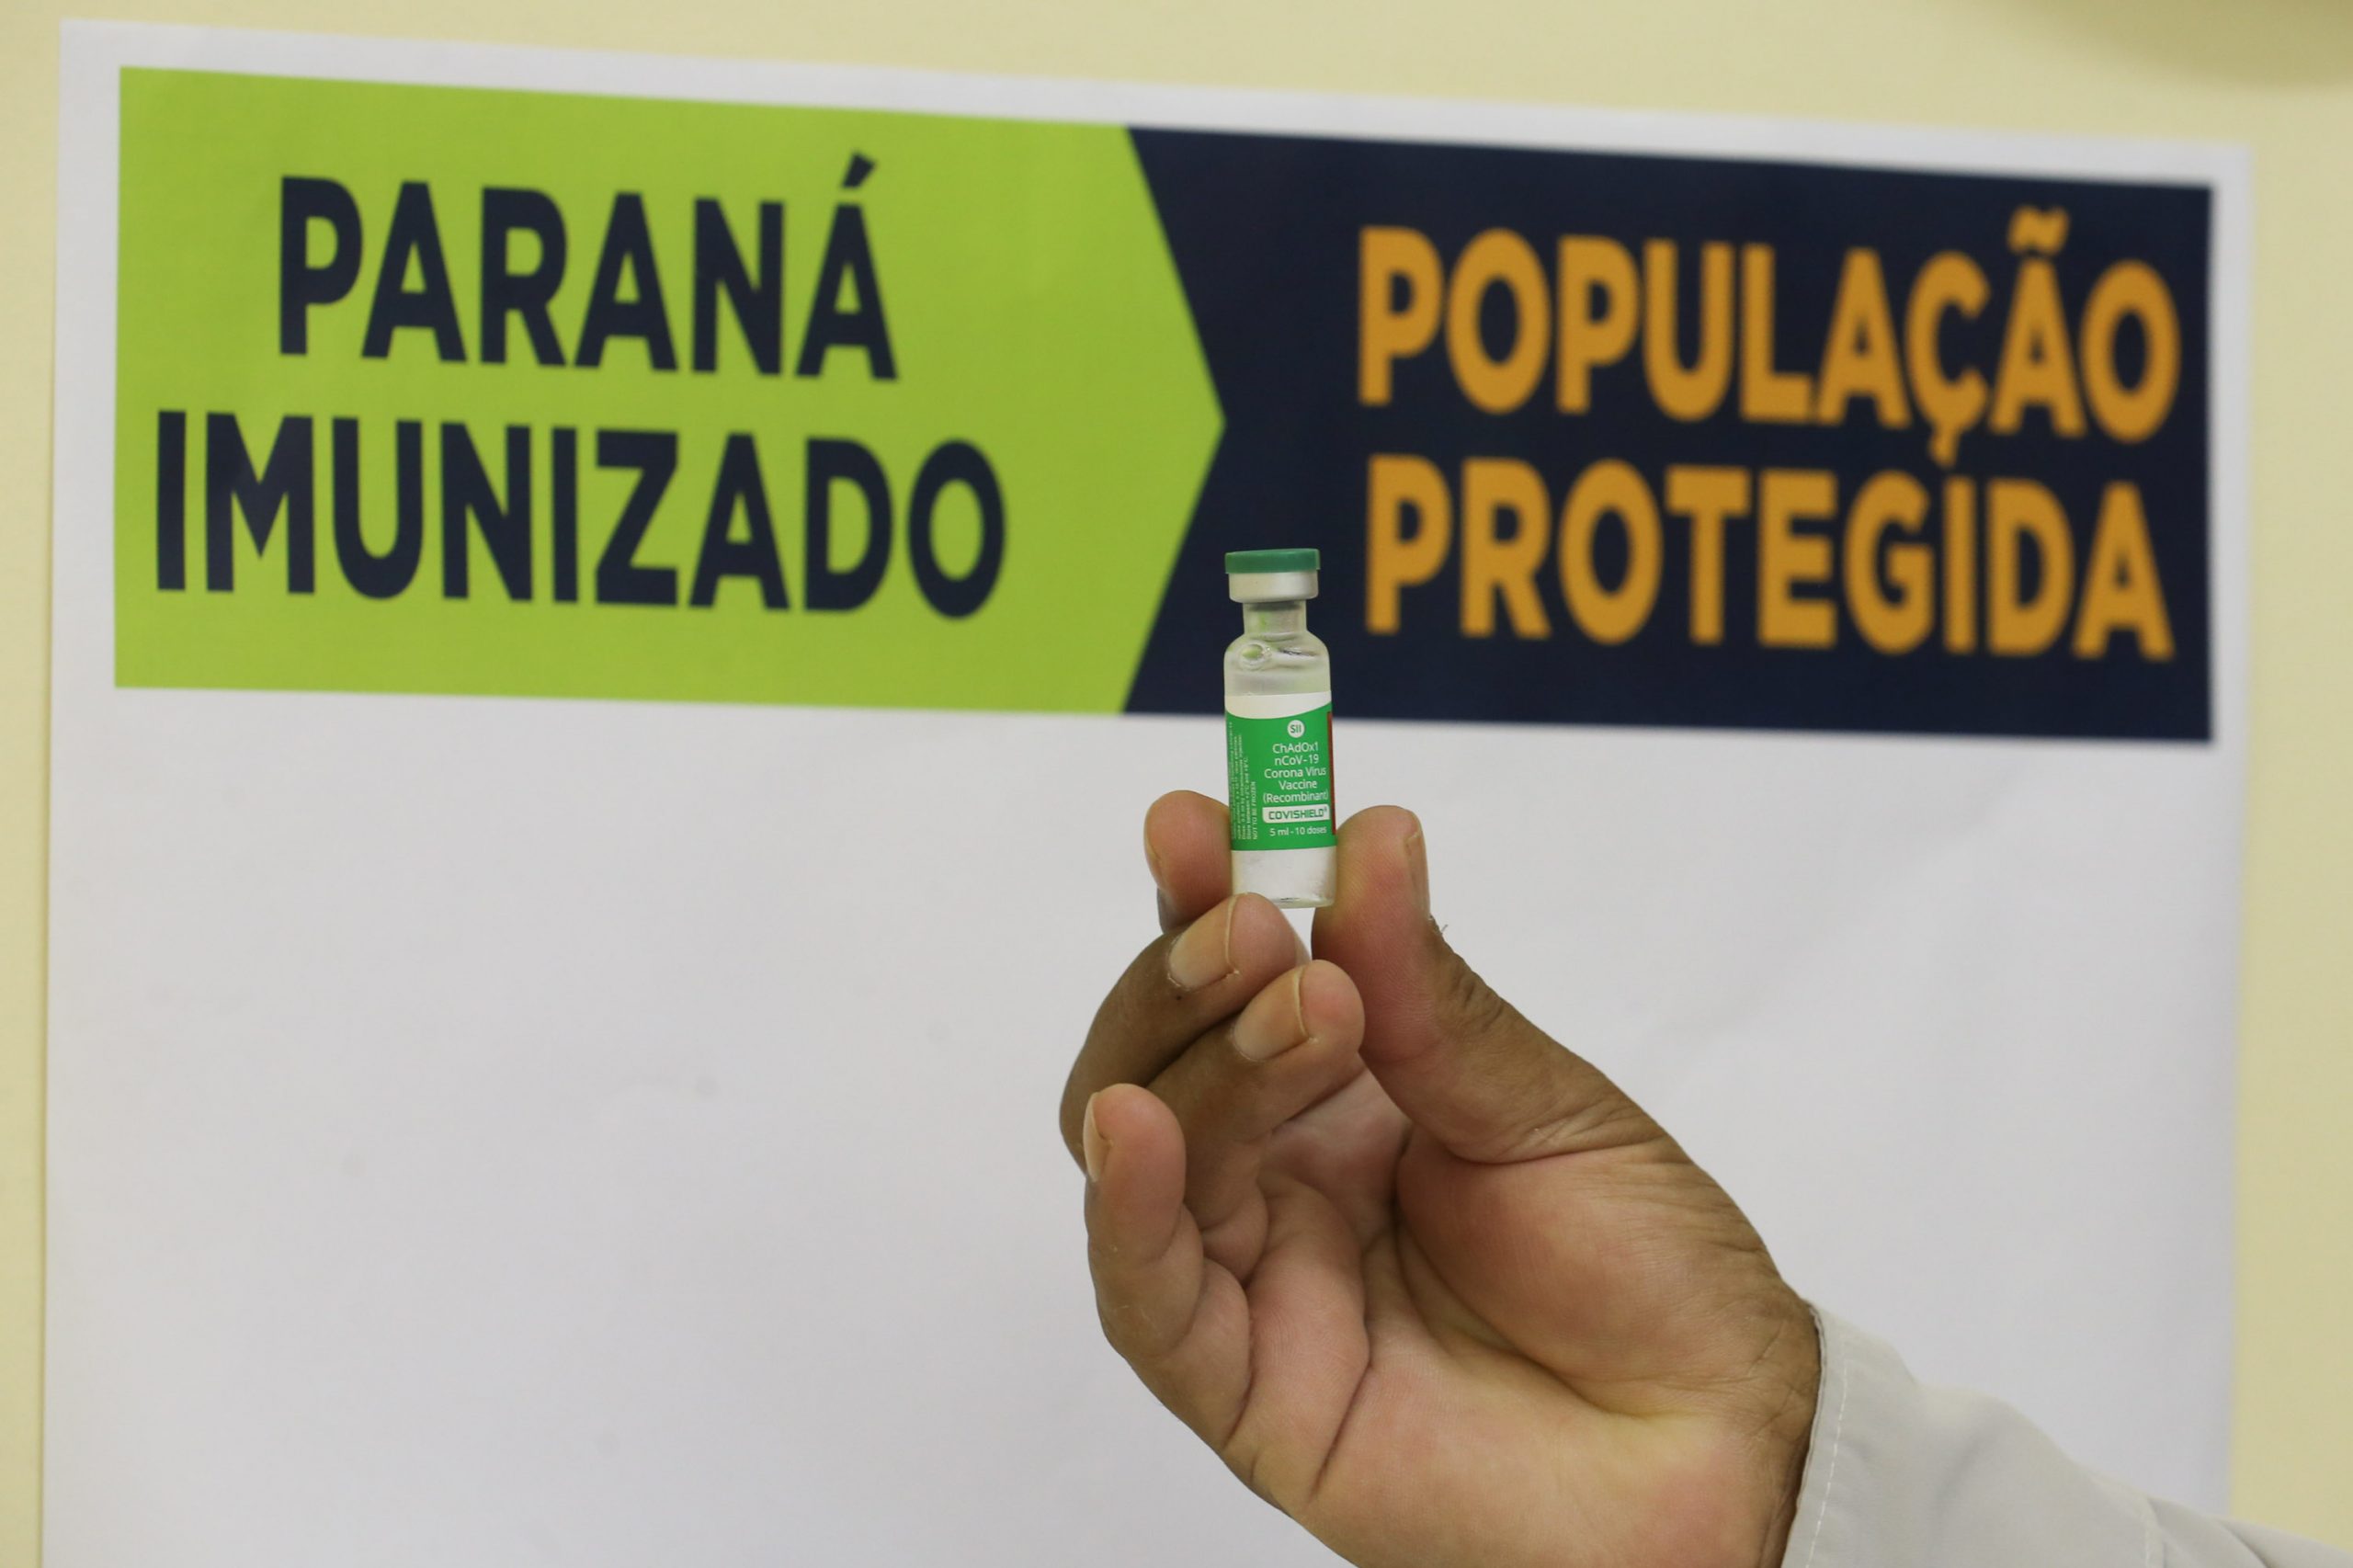 Vacina enviada pelo Ministério da Saúde será usada para reativar imunização no Paraná